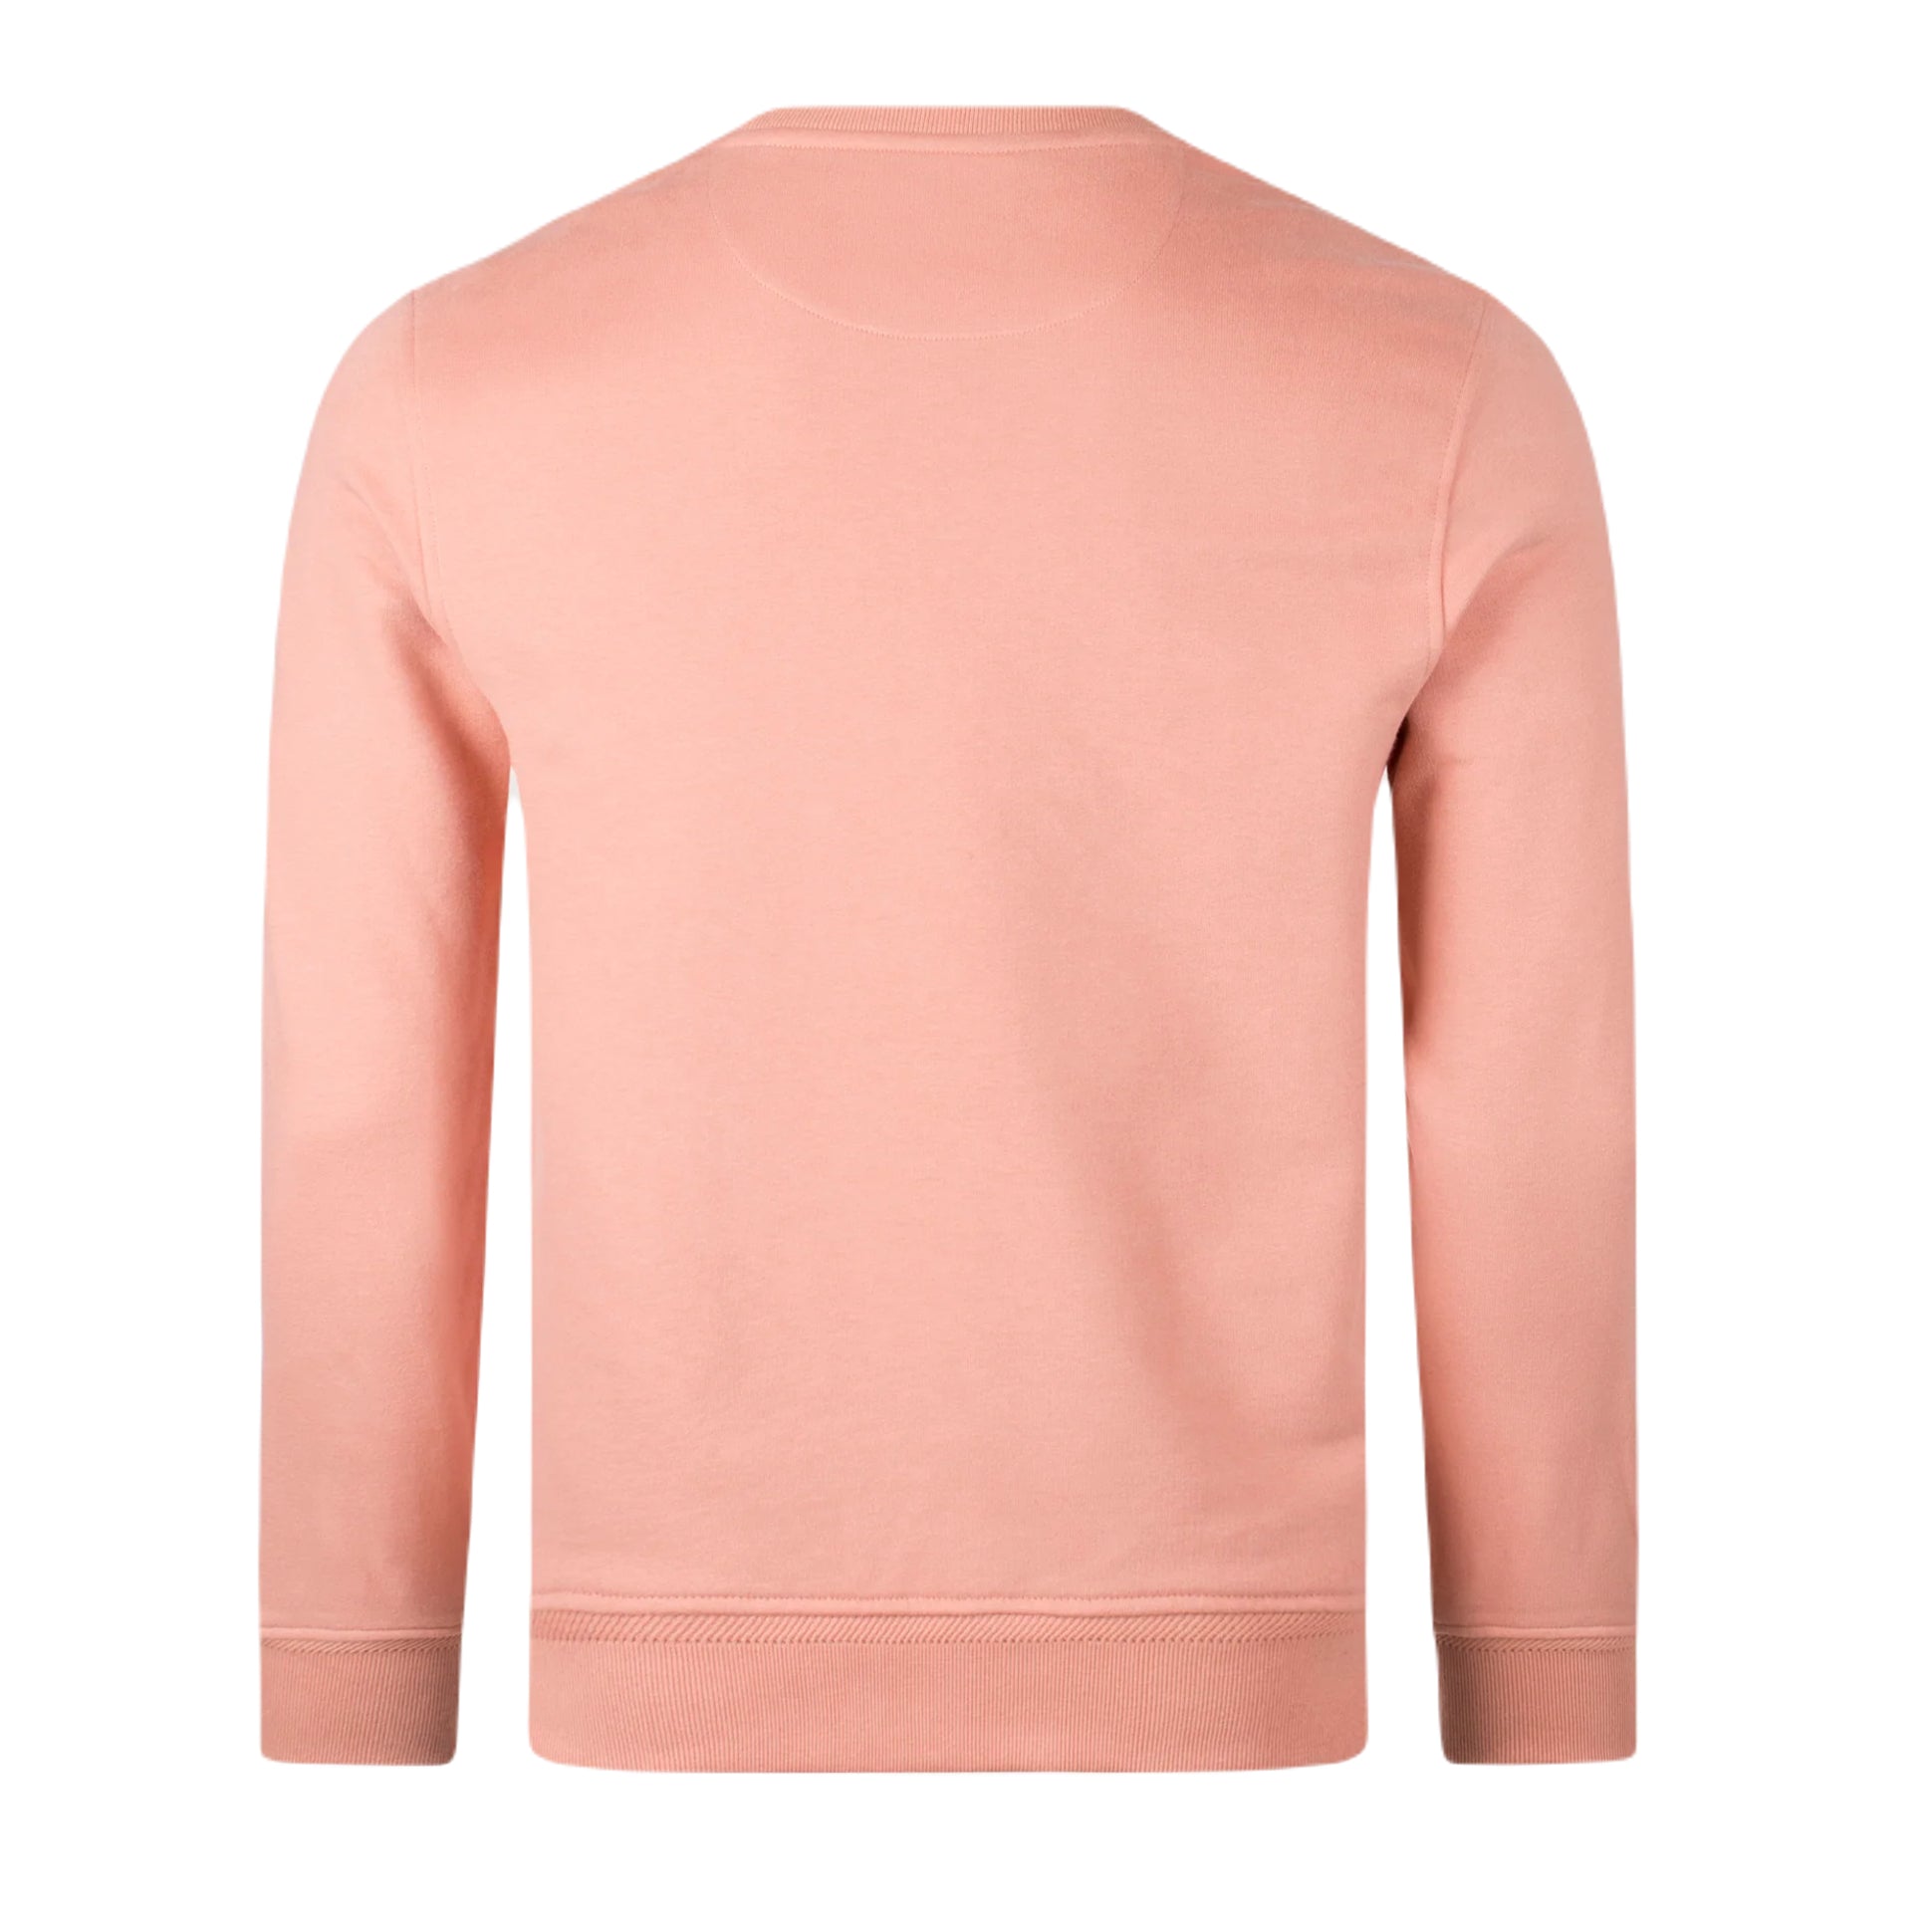 Belstaff Logo Sweatshirt - Rust Pink - Escape Menswear